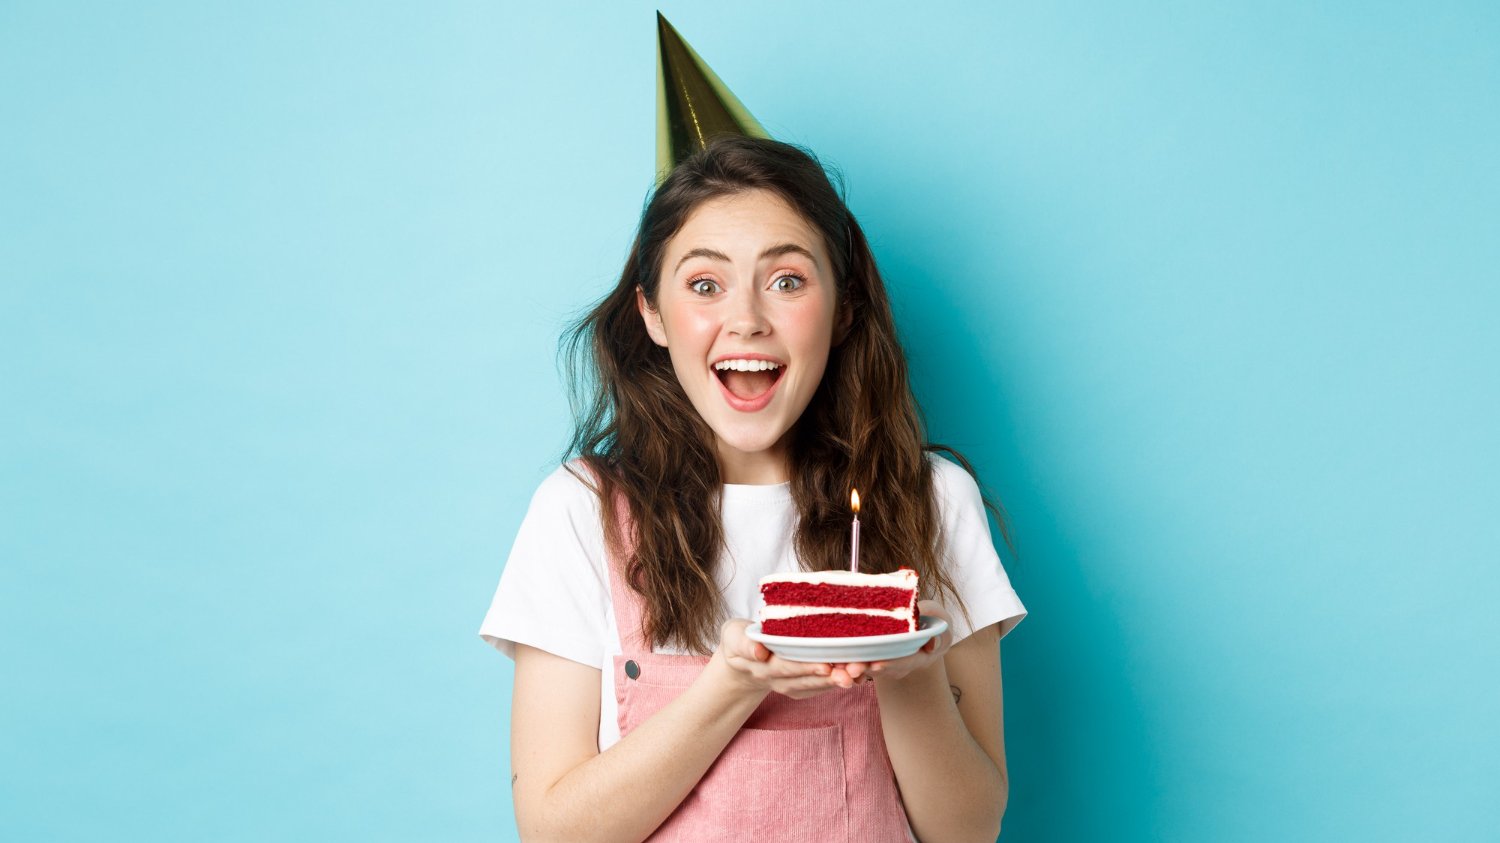 Mulher branca de cabelos grandes e escuros sorrindo enquanto segura um pedaço de bolo com uma vela em cima.